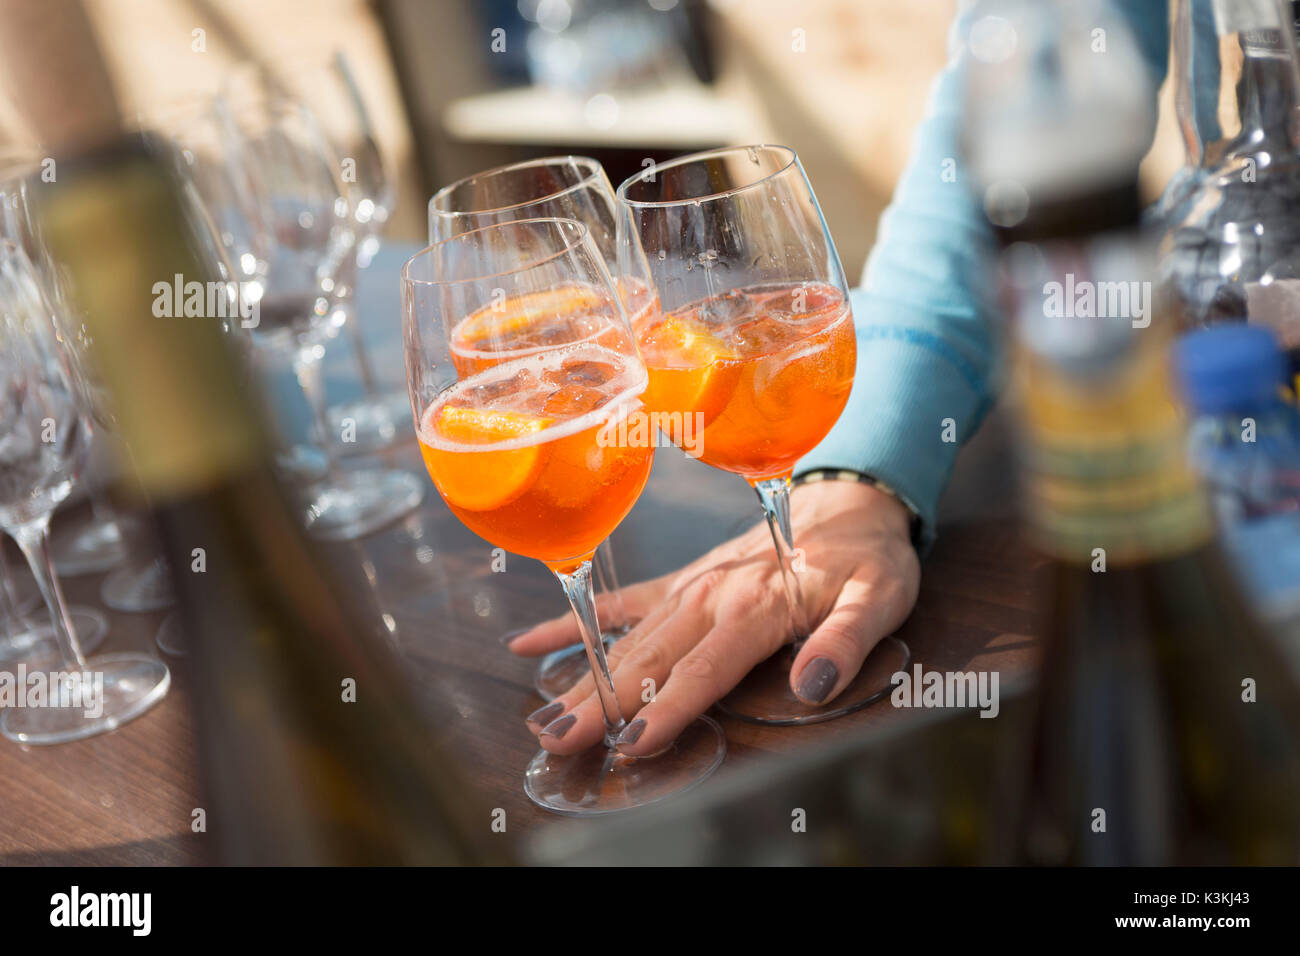 Une image d'une serveuse servant trois cocktails, la province de Bolzano, le Tyrol du Sud, Trentin-Haut-Adige, Italie, Europe Banque D'Images